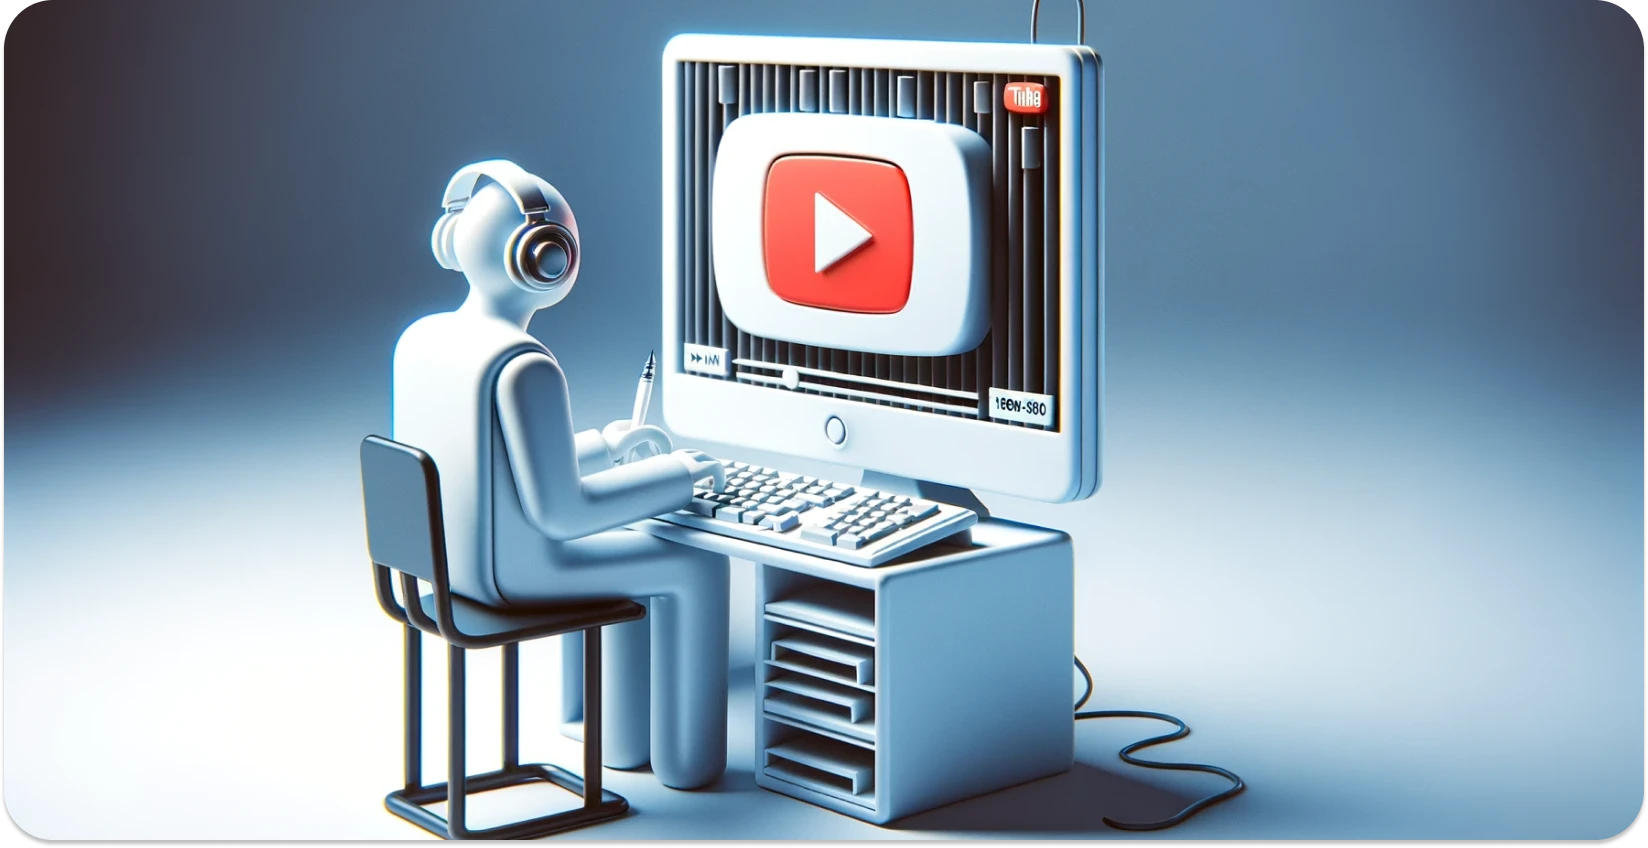 איור מסוגנן של אדם המשתמש במחשב עם ממשק YouTube, תוך התמקדות בתמלול.